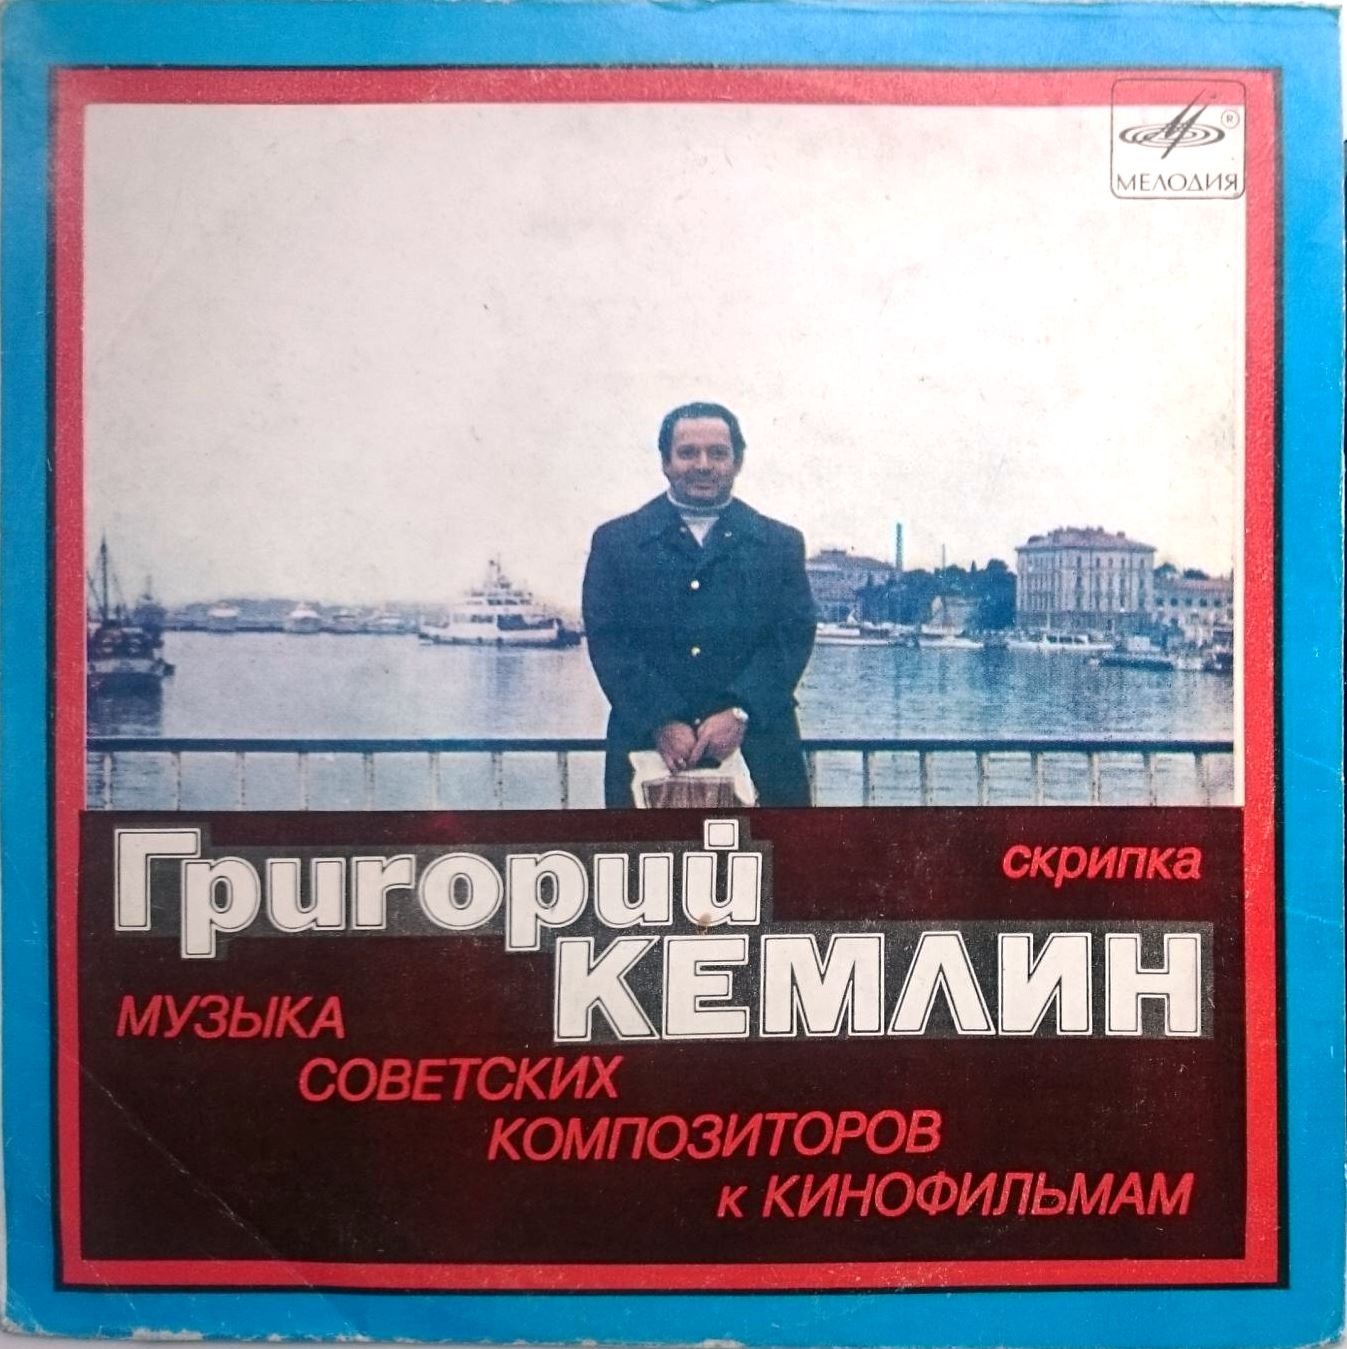 КЕМЛИН Григорий (скрипка).